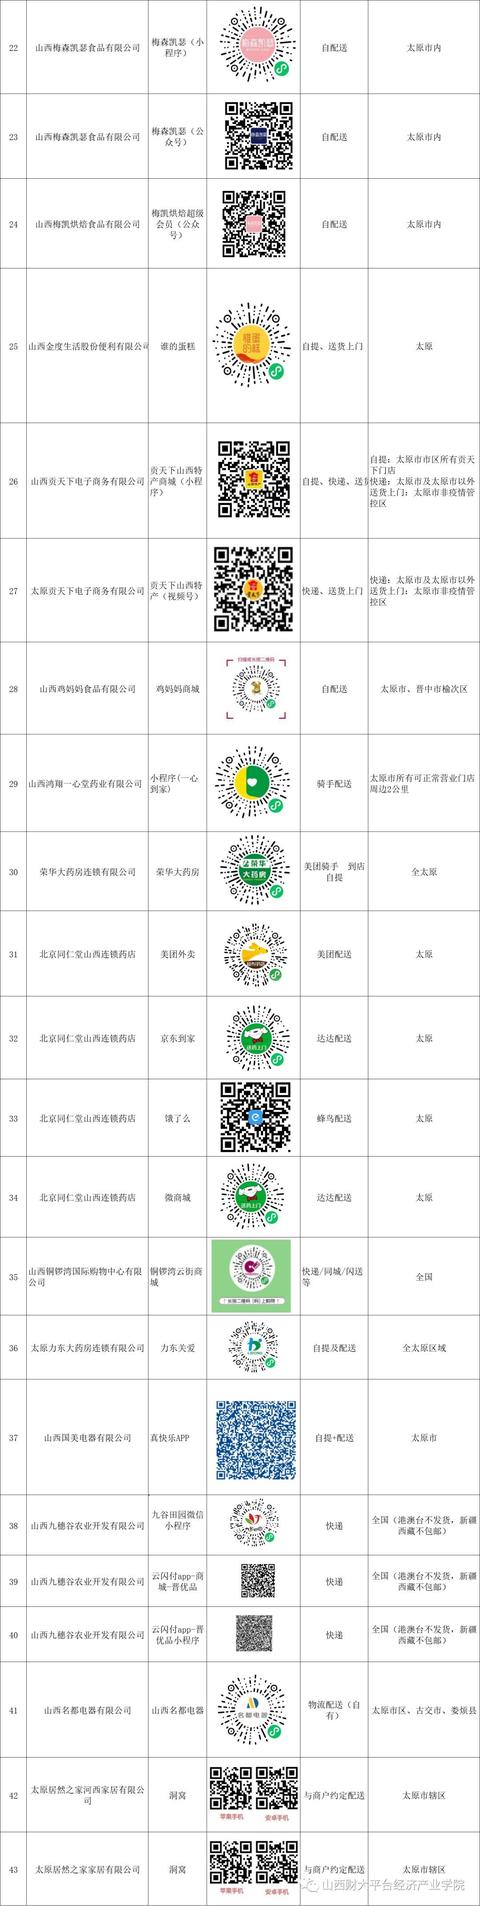 太原市商务局提供线上购小程序平台名单